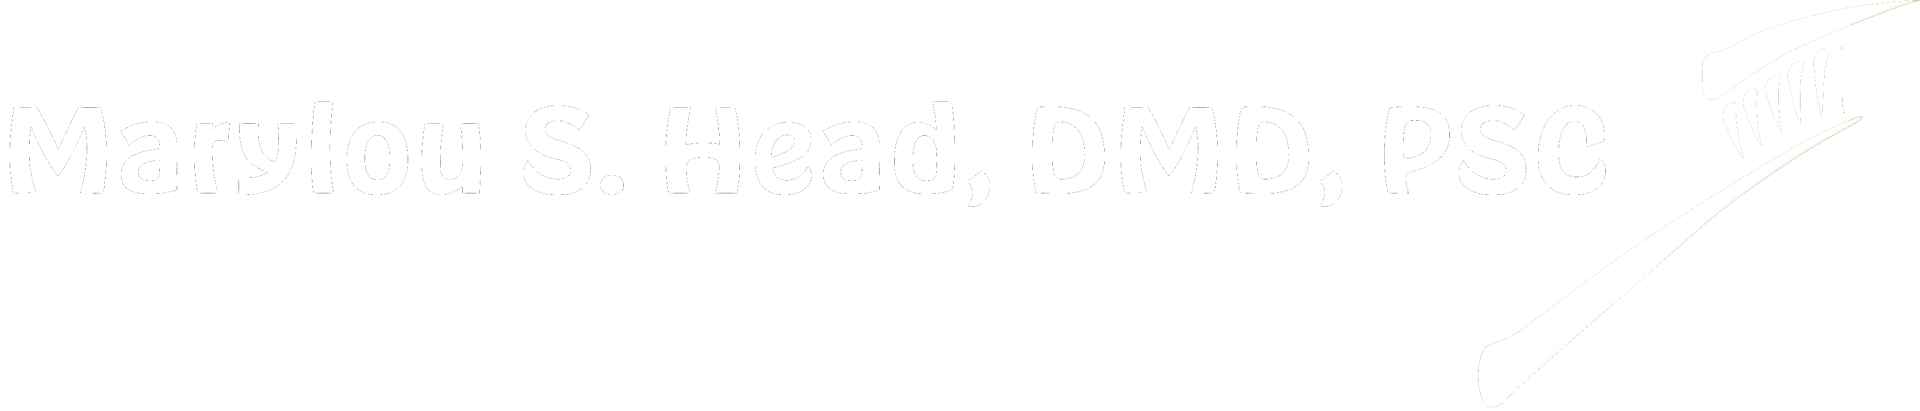 Dr Marylou Head DMD Logo